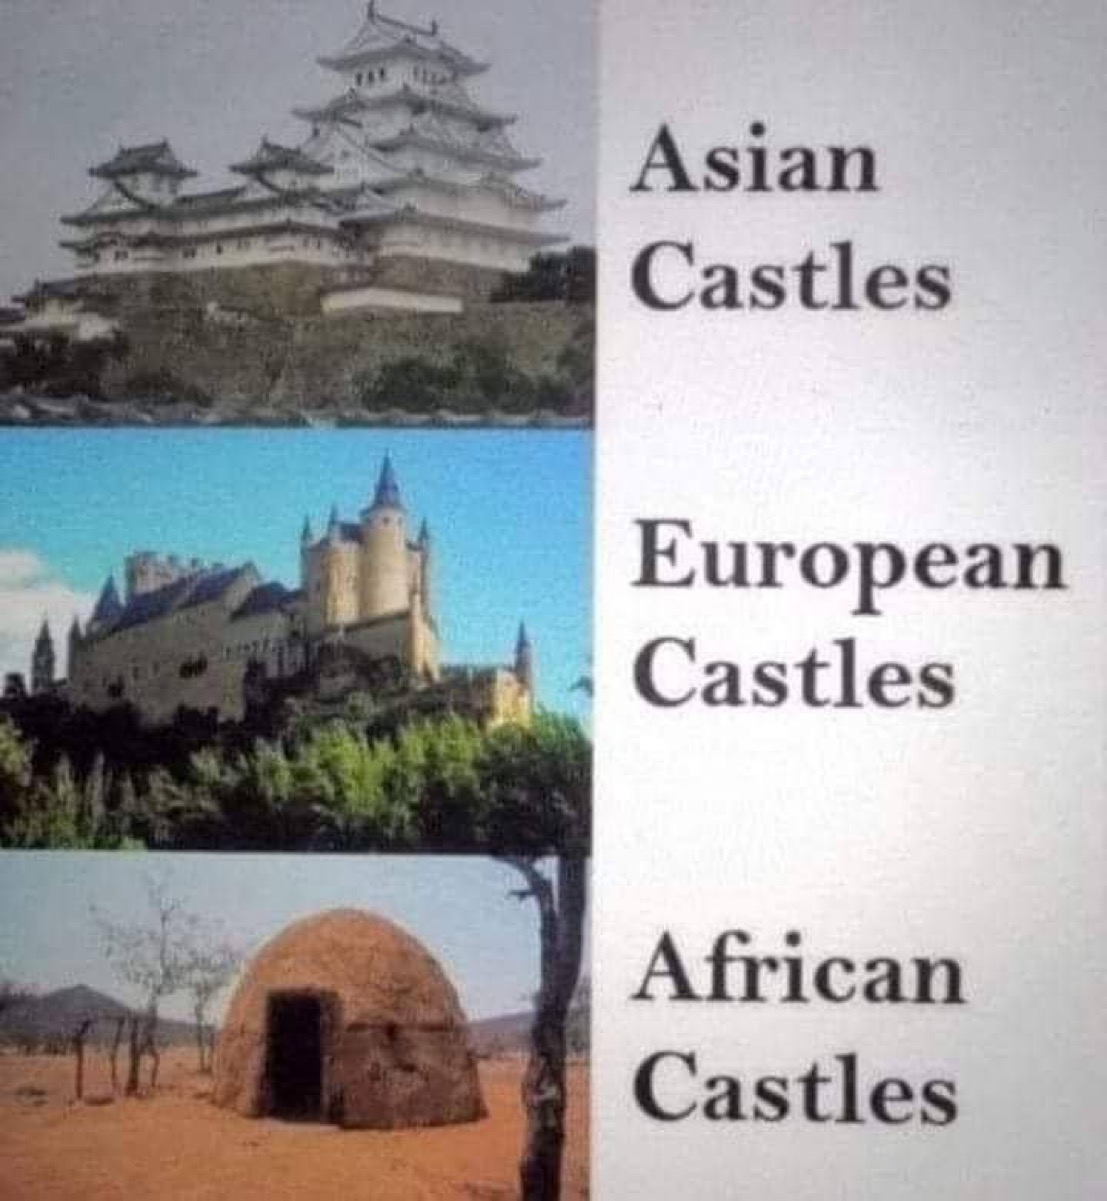 アフリカの城、メチャメチャバカにされてしまう…  [462275543]\n_1